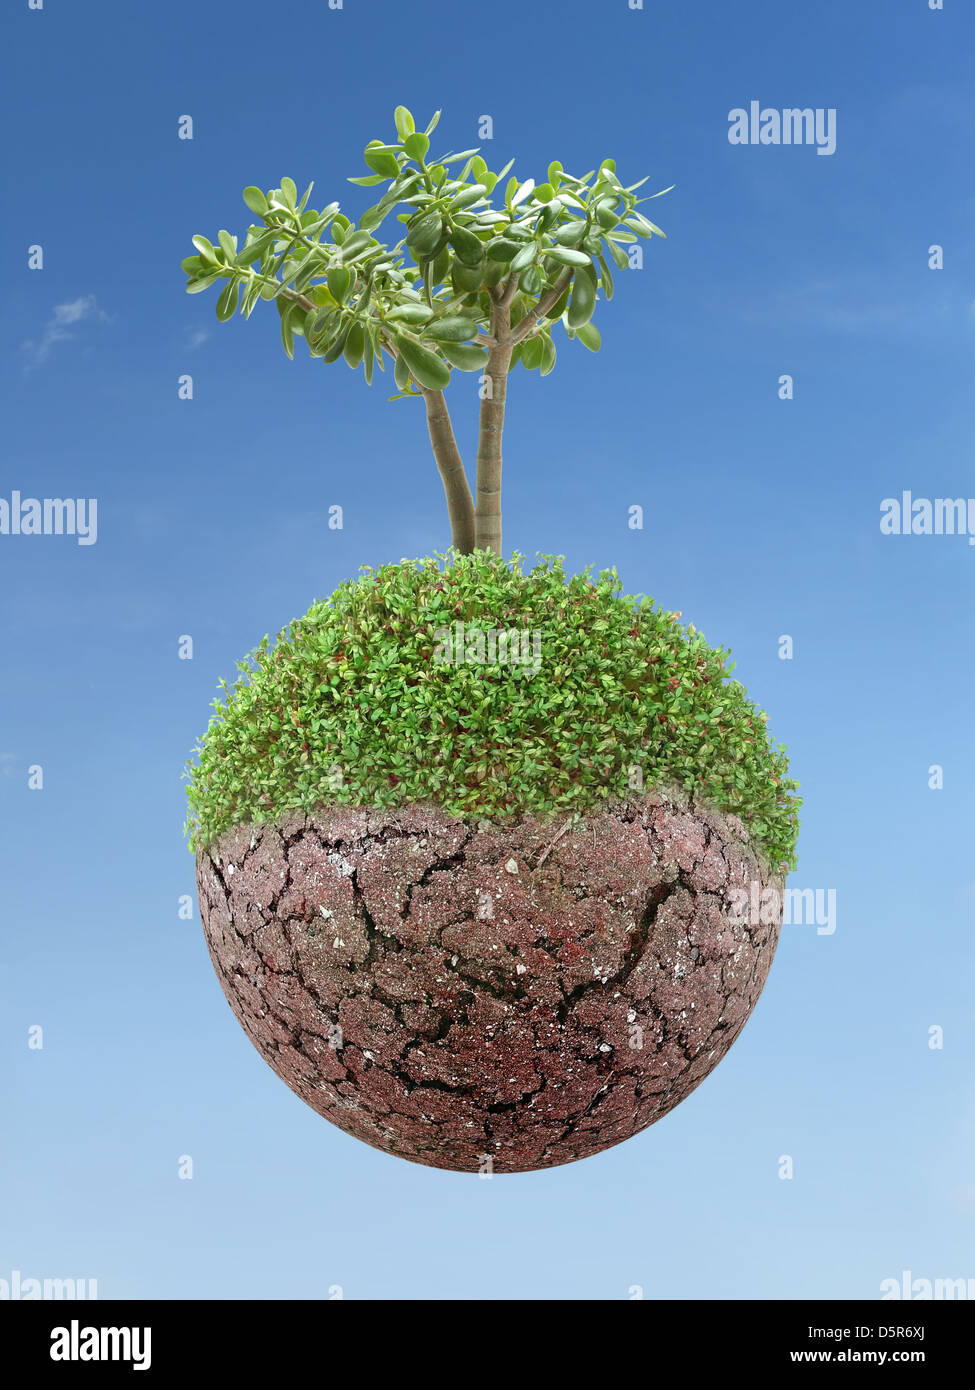 Esfera de tierra seca y agrietada como concepto de calentamiento global Foto de stock